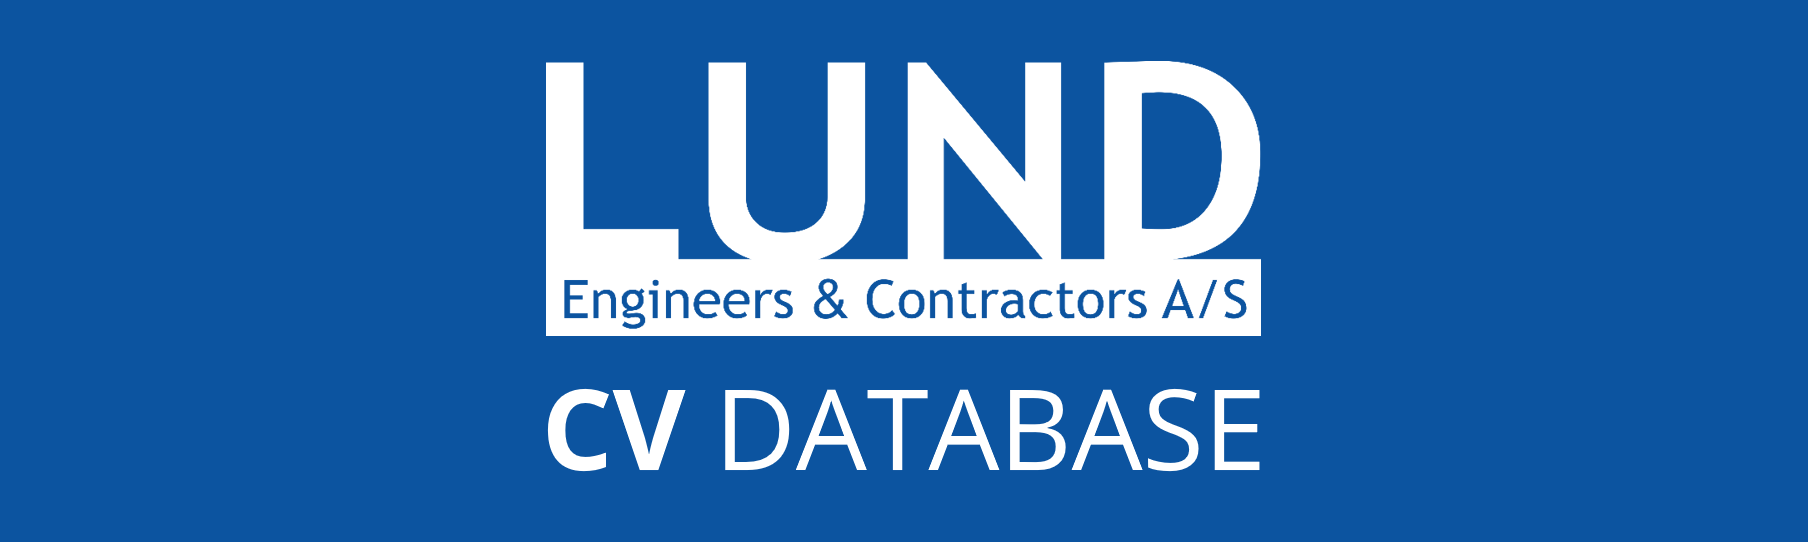 LUND CV database